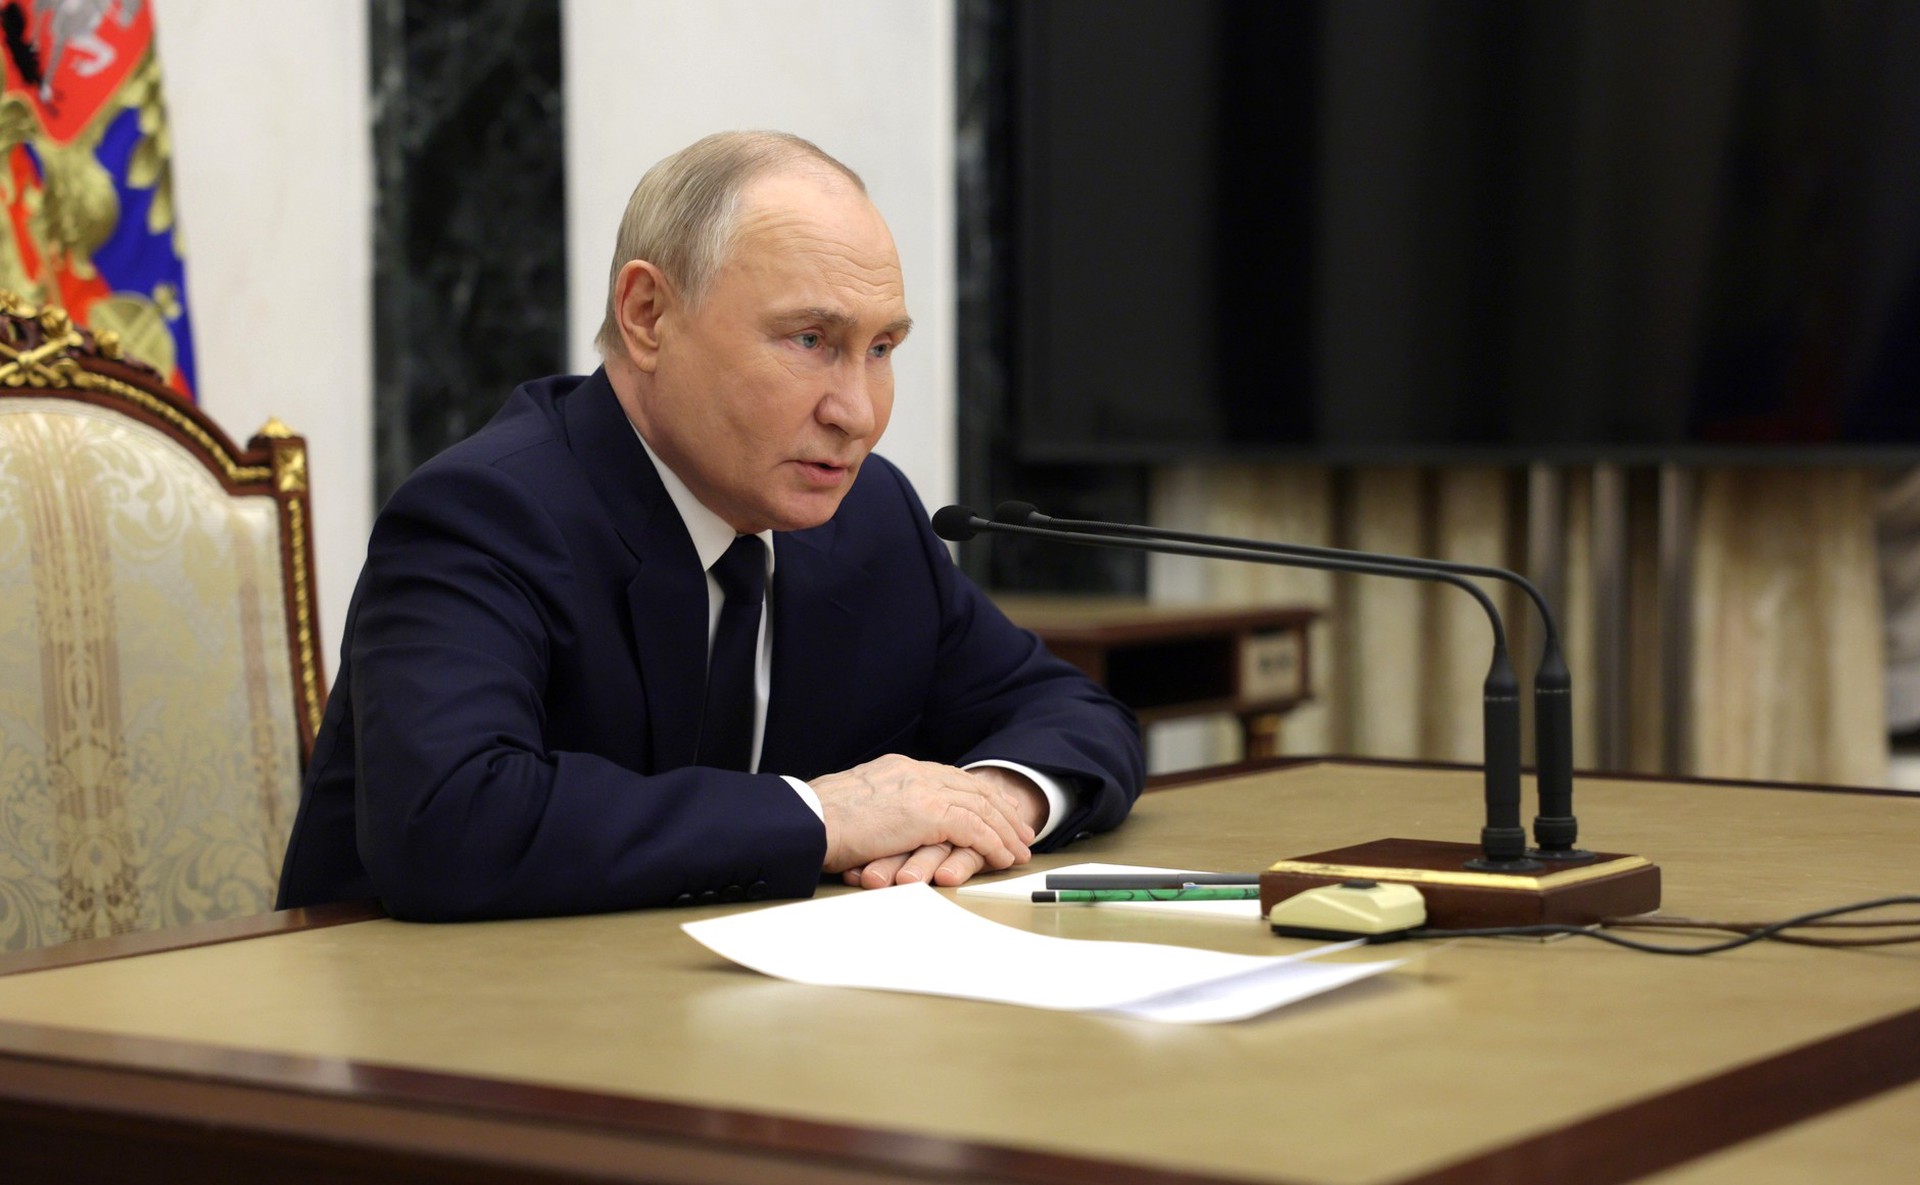 Песков: Путин готов к переговорам по Украине с единственной целью